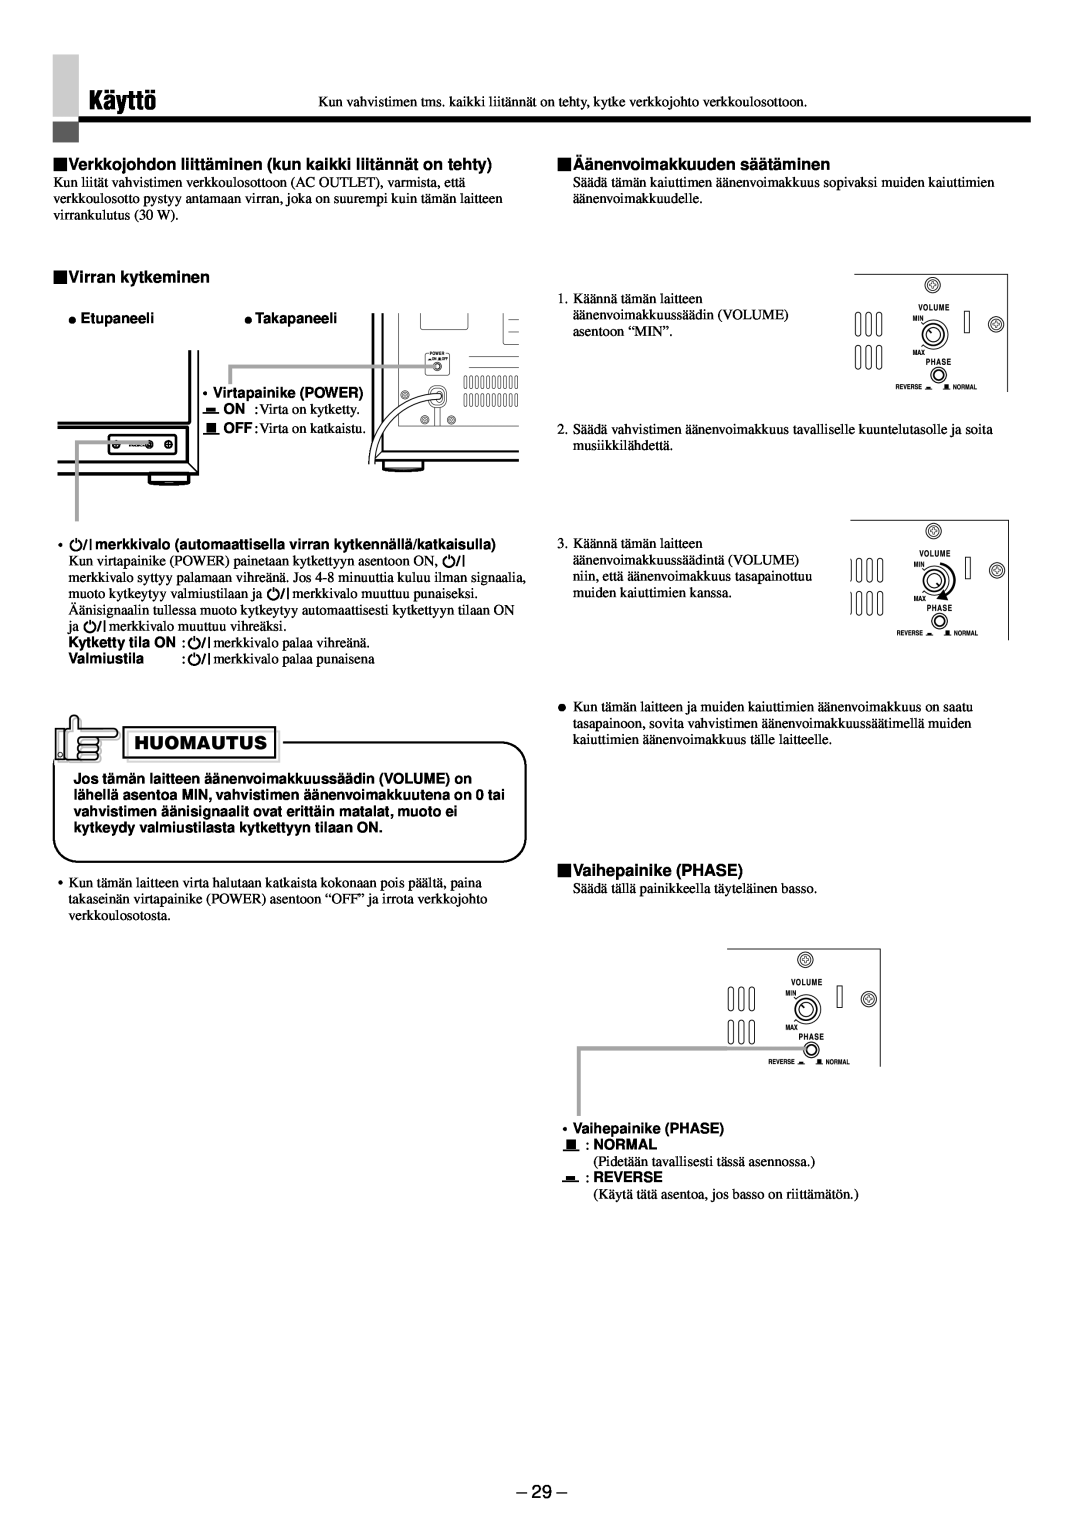 JVC SP-PW880 manual Käyttö, Huomautus, Äänenvoimakkuuden säätäminen, Virran kytkeminen, Vaihepainike PHASE 